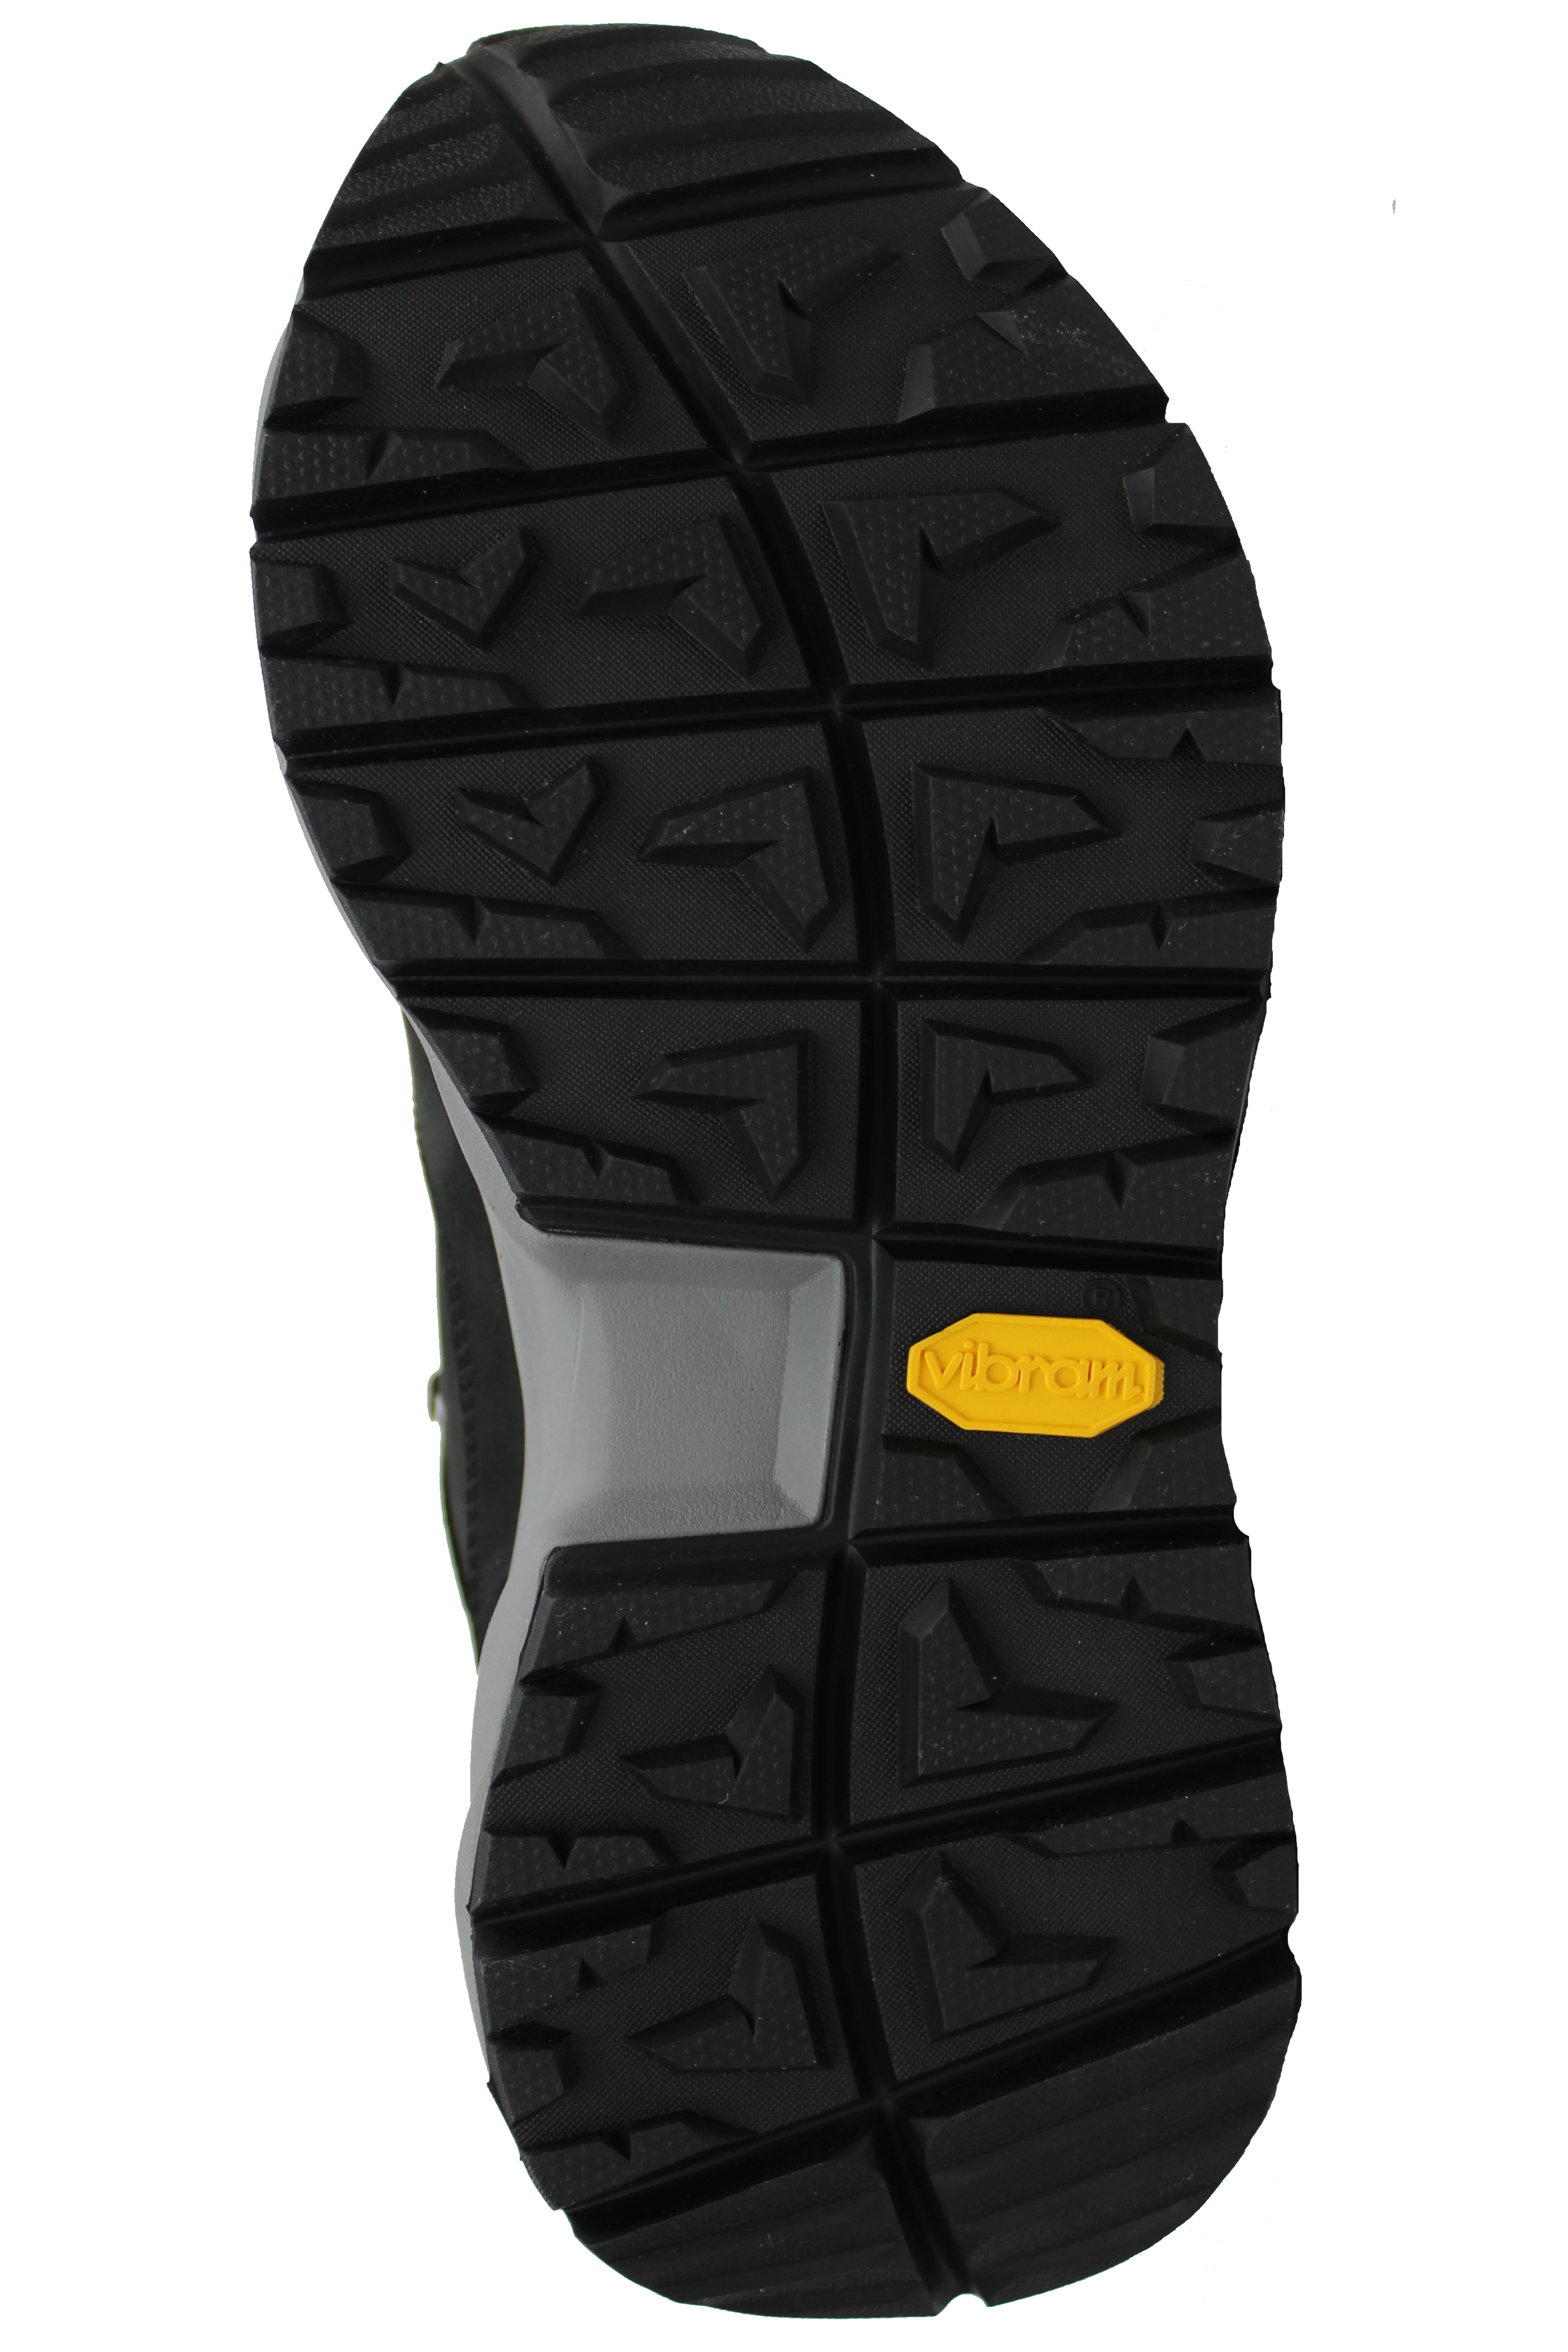 Ботинки Dolomite W's Braies GTX Black